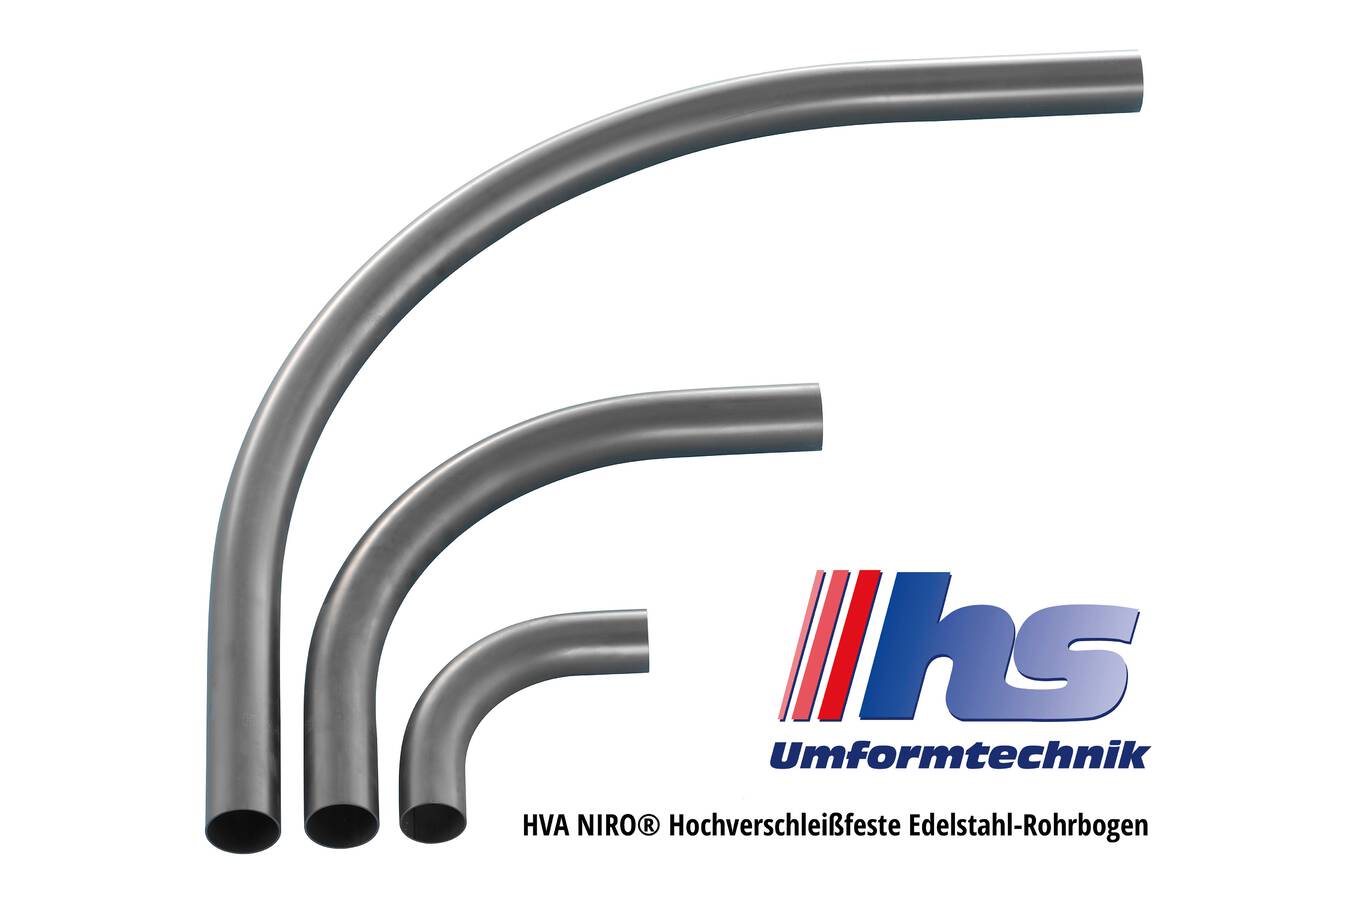 Hochverschleißfeste Rohrbögen Die HS Umformtechnik GmbH präsentiert mehrere Produkte mit besonderem Verschleißschutz:  HVA NIRO Edelstahl-Rohrbogen; DWR Doppelwand-Rohrbogen und Glasrohrbögen.